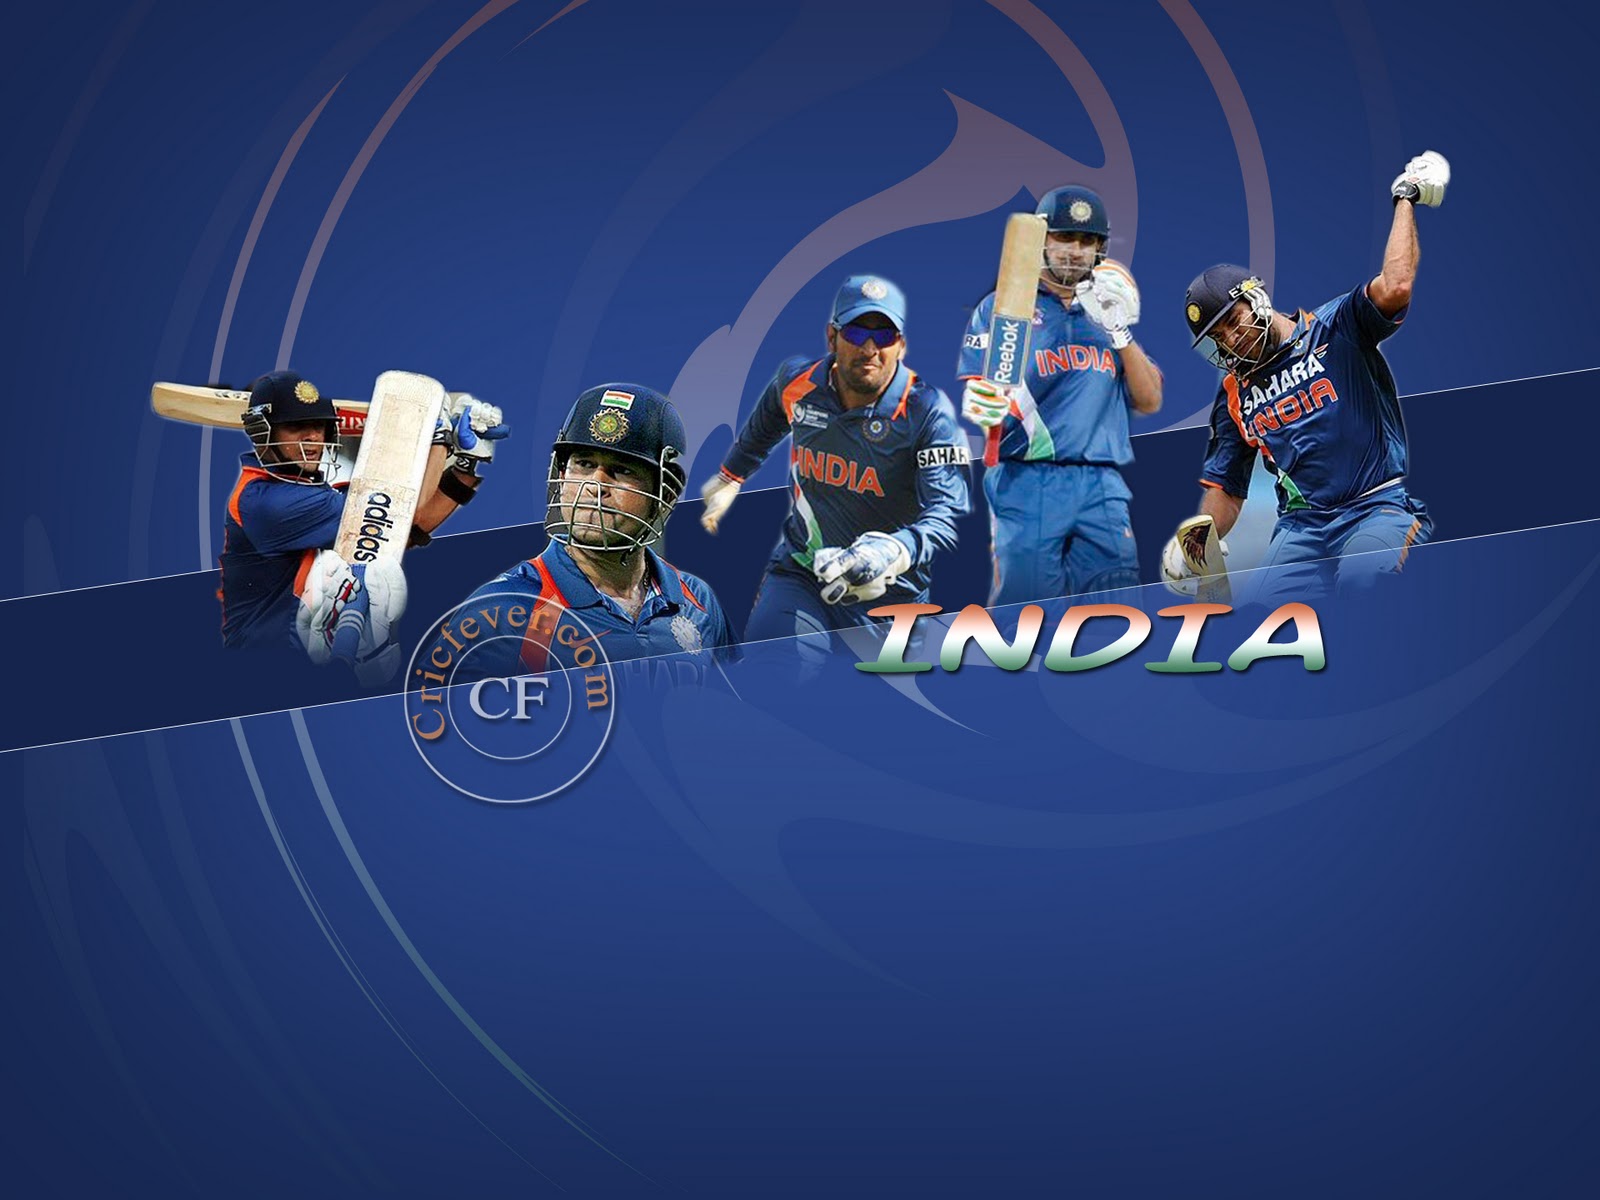 http://2.bp.blogspot.com/-vIerda-D-9I/TZDLkXglFsI/AAAAAAAABro/r1jyKVq-1mA/s1600/Team_India_for_icc_world_cup_wallpapers.jpg